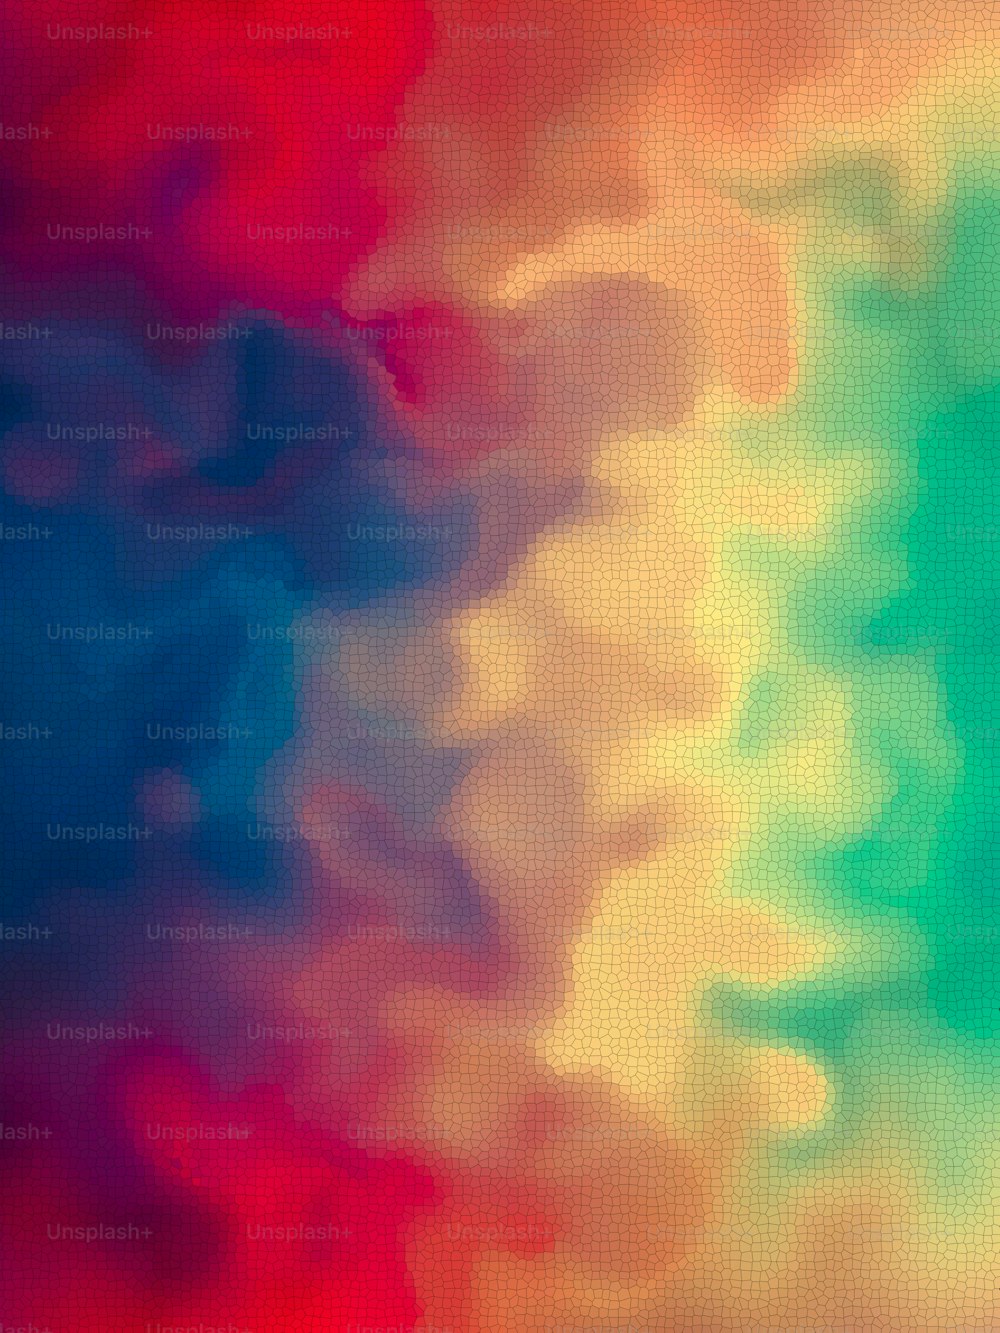 Ein verschwommenes Bild eines regenbogenfarbenen Hintergrunds